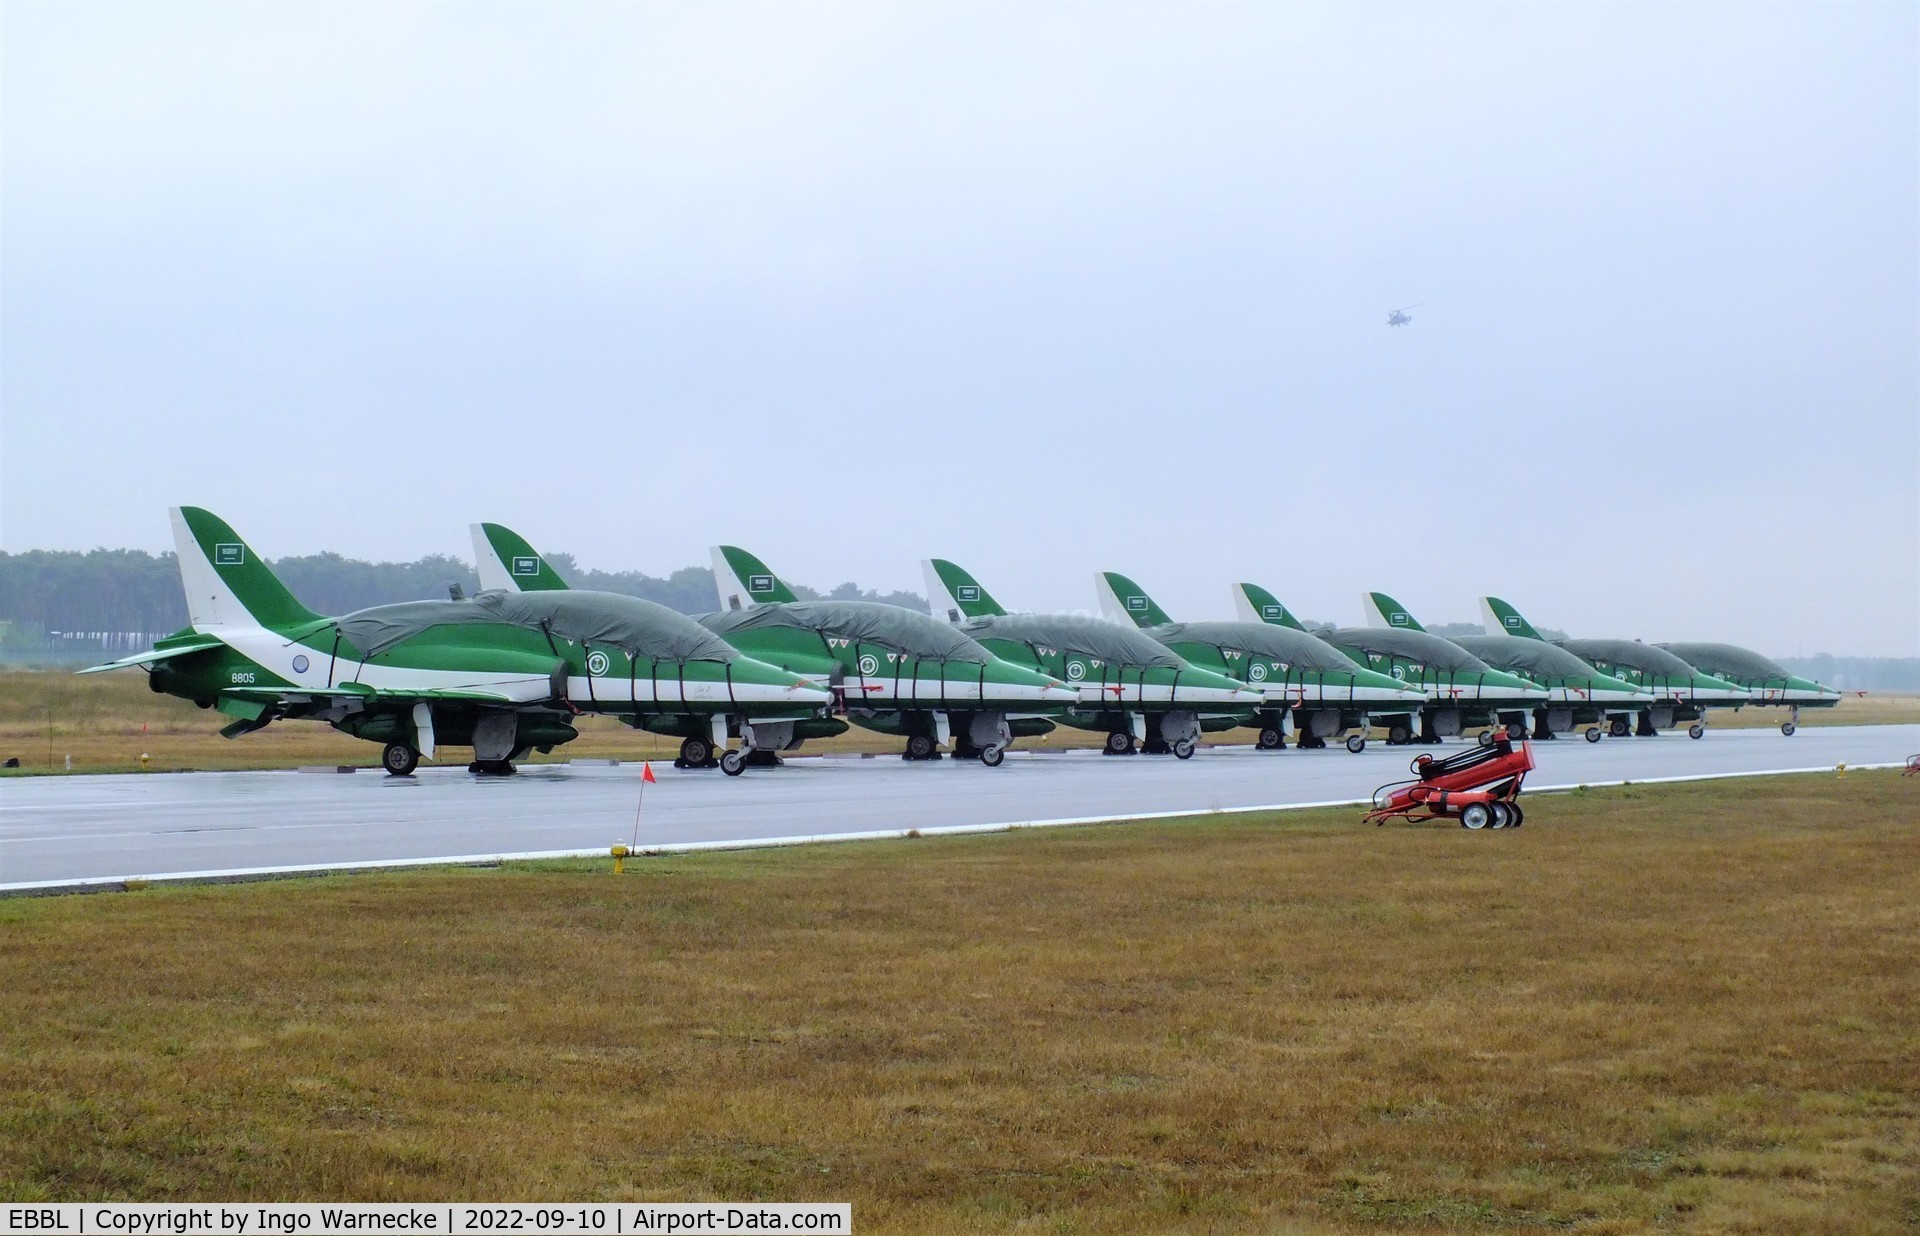 Kleine Brogel Air Base Airport, Kleine Brogel Belgium (EBBL) - Saudi Hawks display team on the flightline at the 2022 Sanicole Spottersday at Kleine Brogel air base